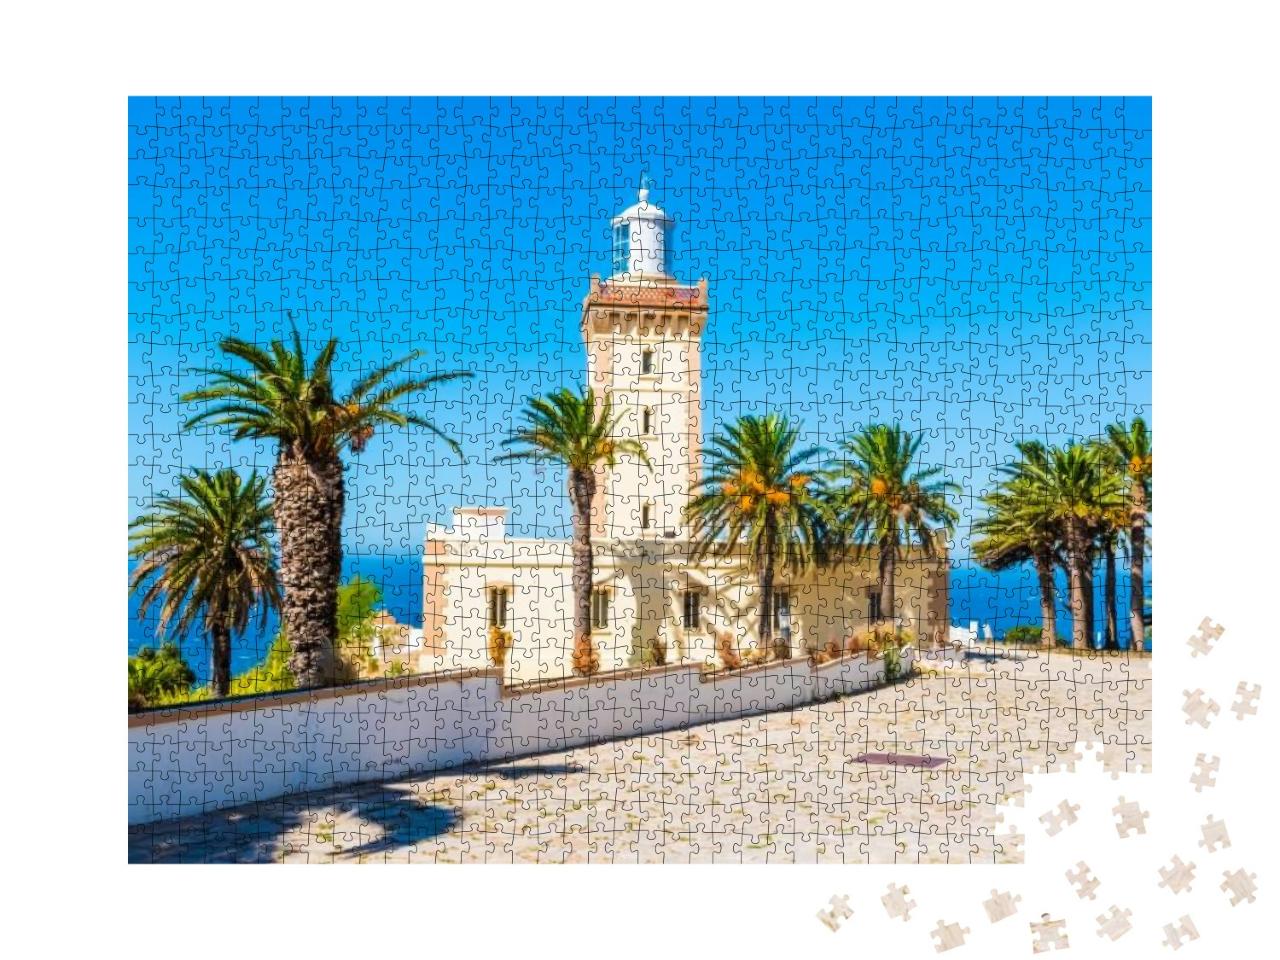 Puzzle 1000 Teile „Leuchtturm von Cap Spartel, Marokko“